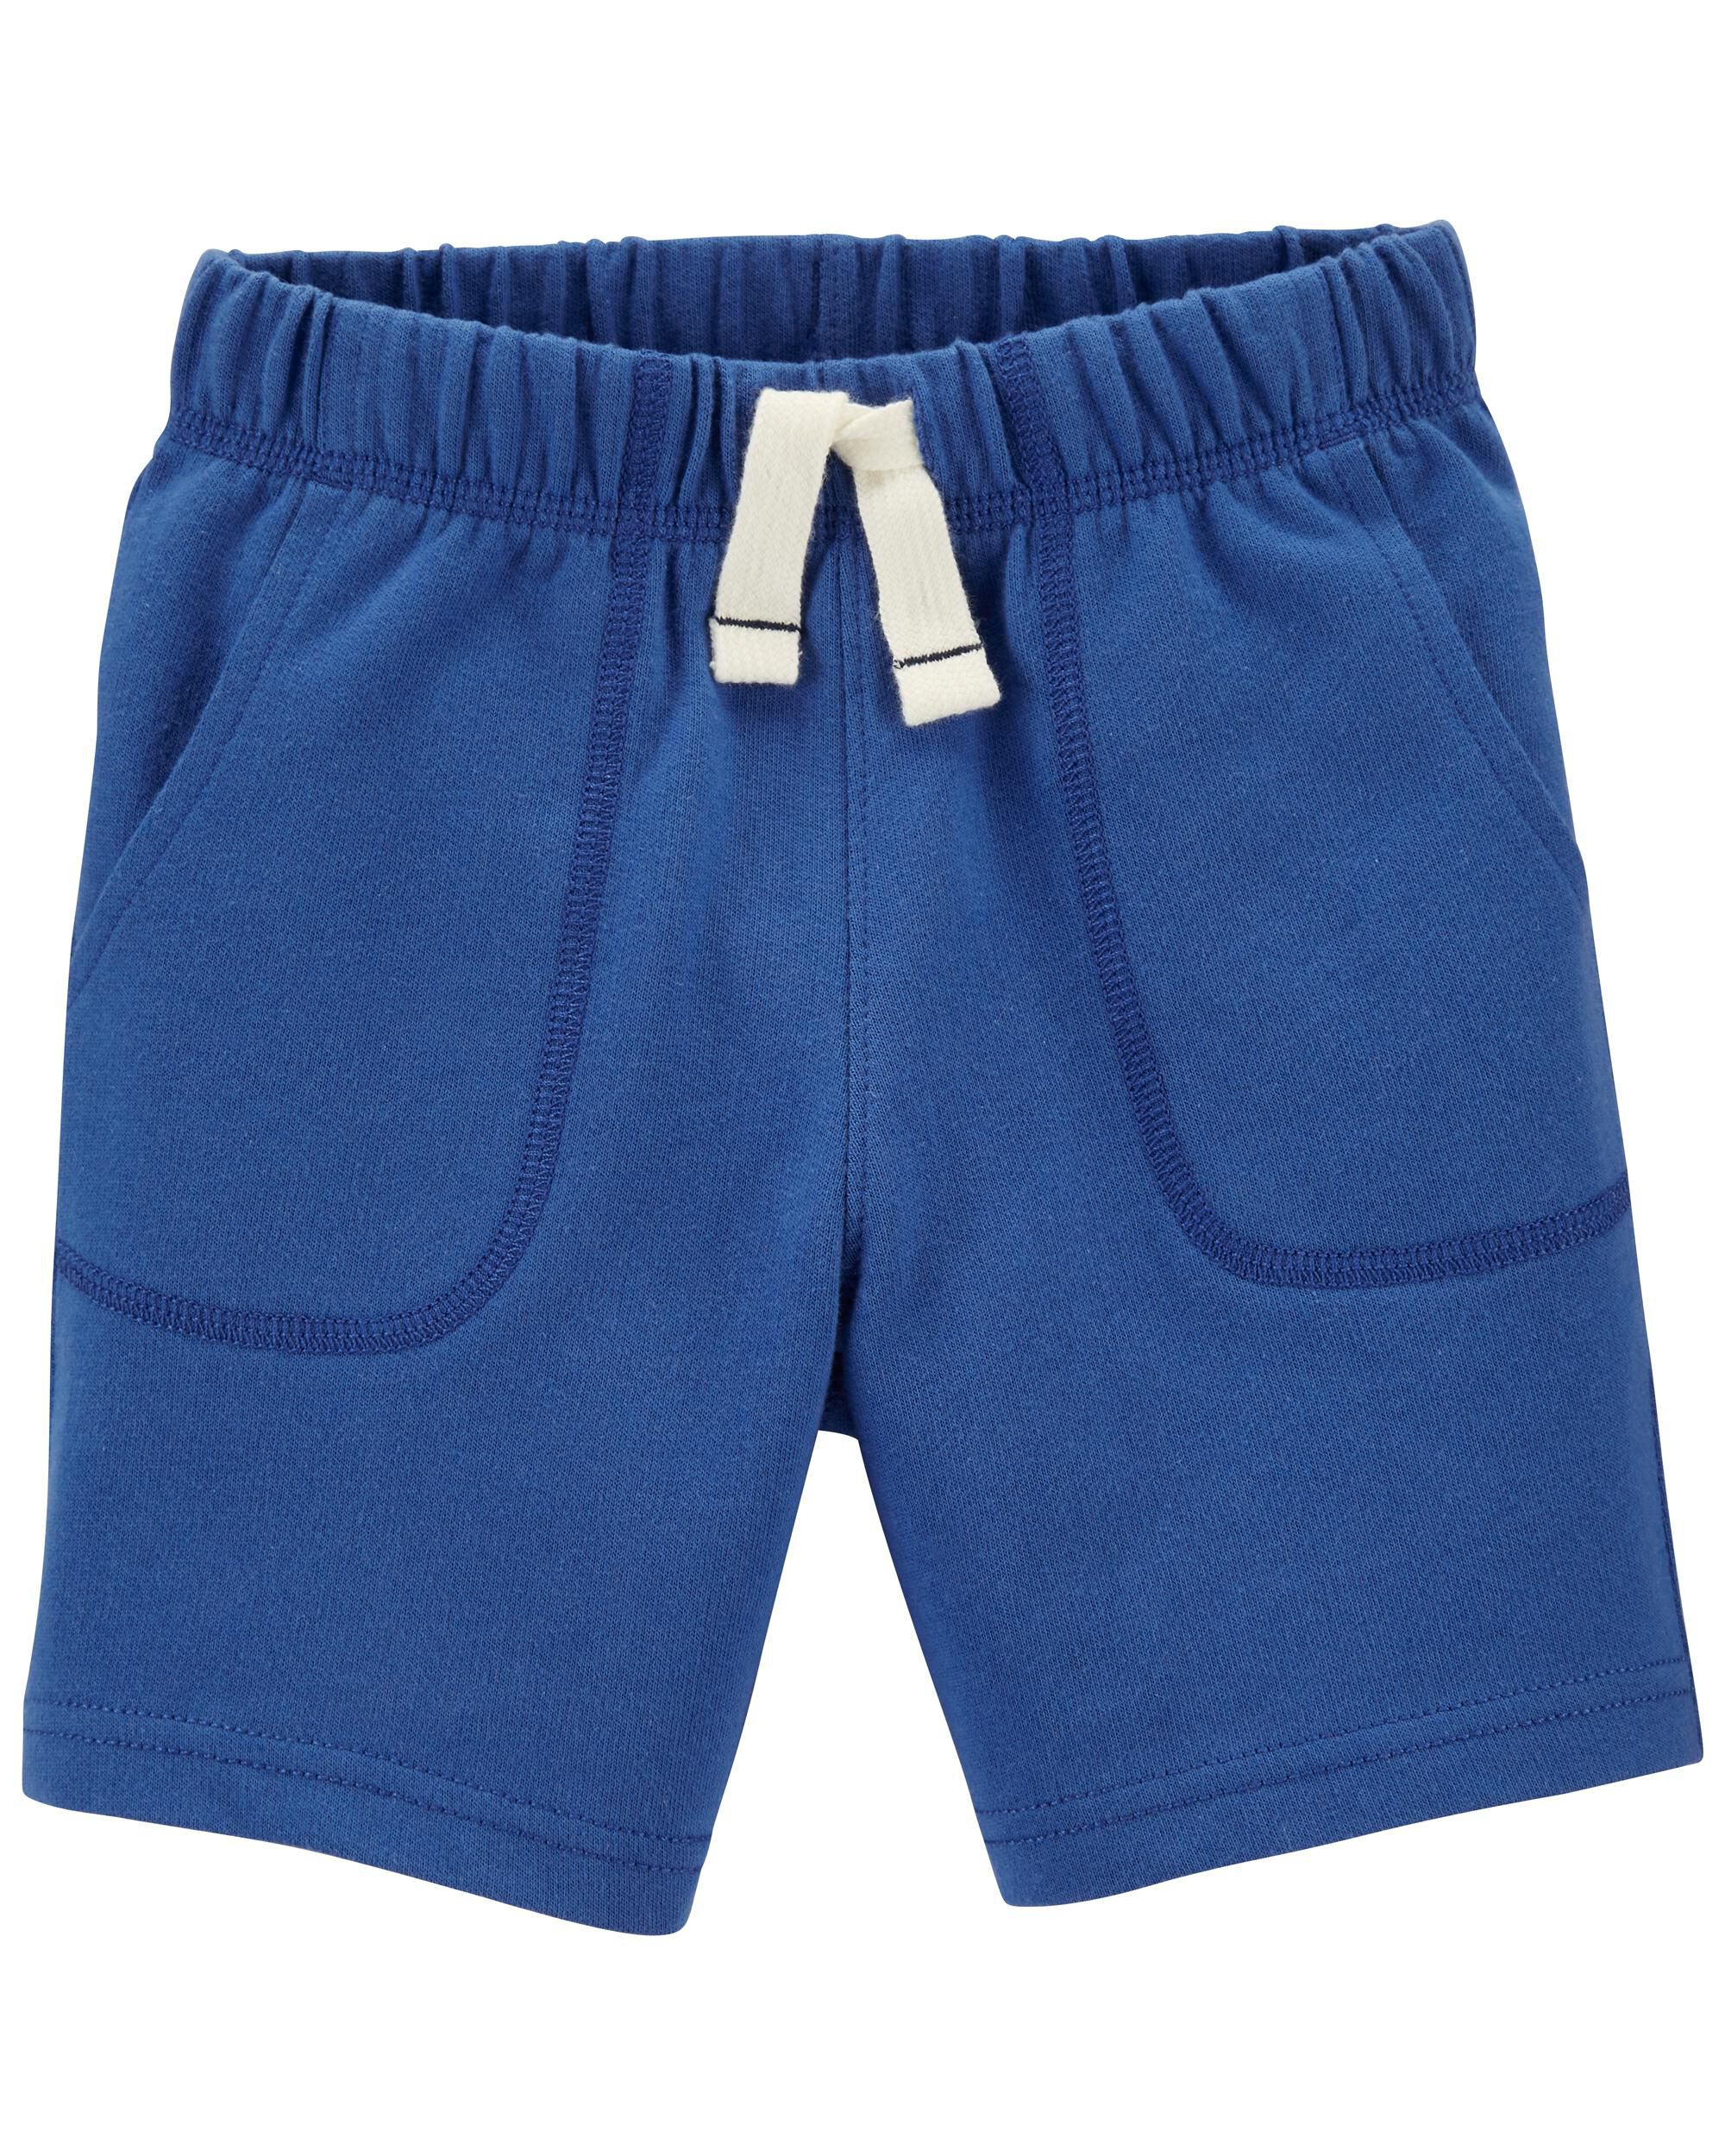 New Carter's Boy Pull-On Knit Denim Shorts Many sizes toddler kid boy 